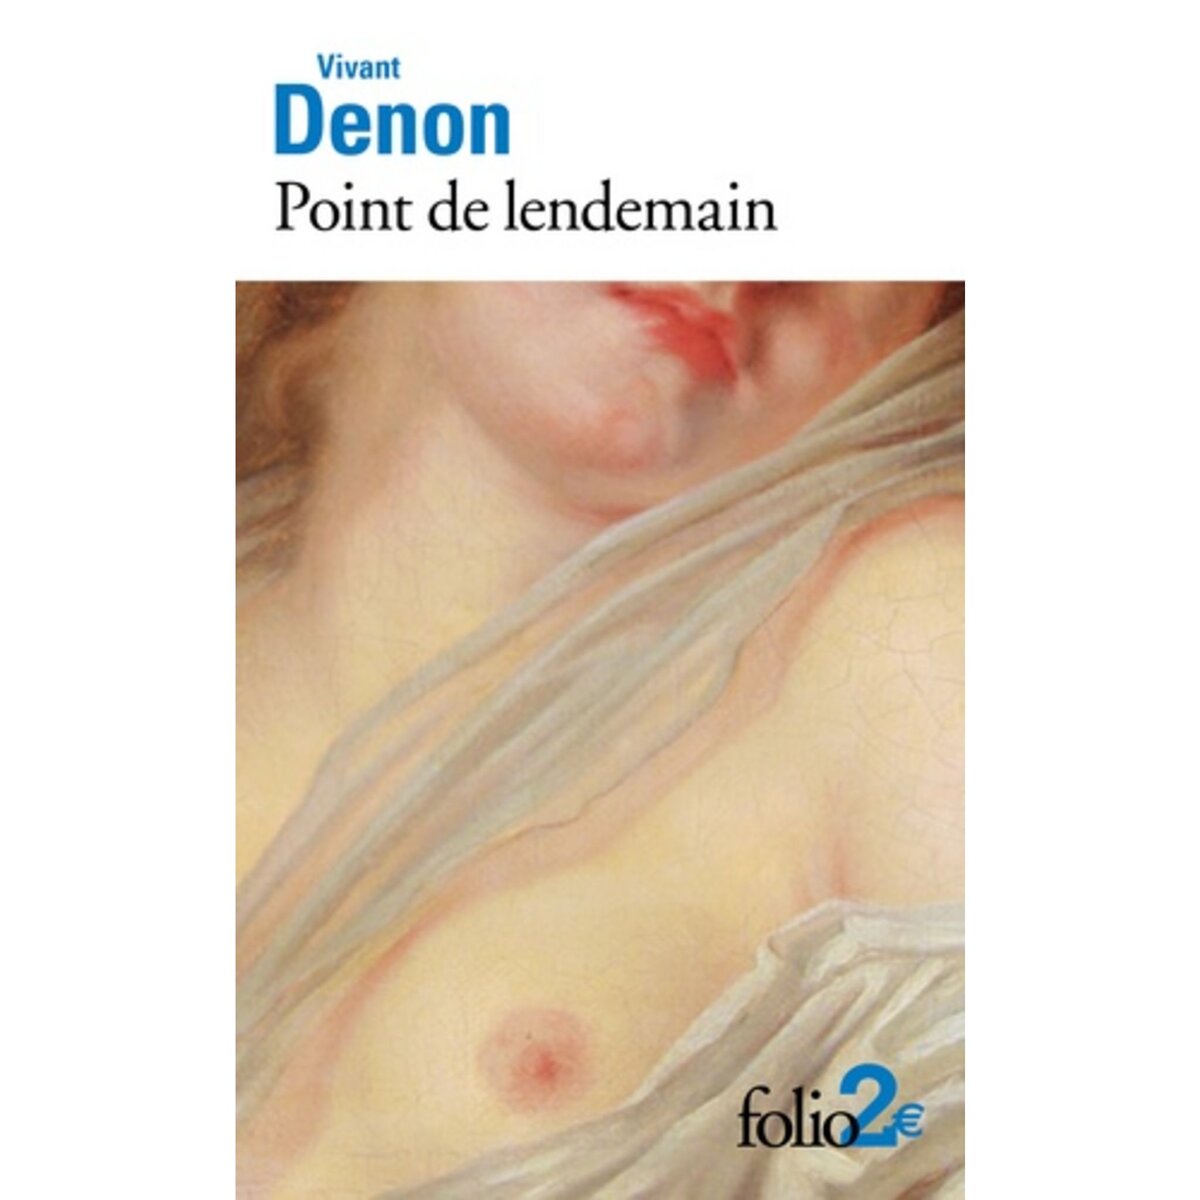  POINT DE LENDEMAIN, Vivant Denon Dominique